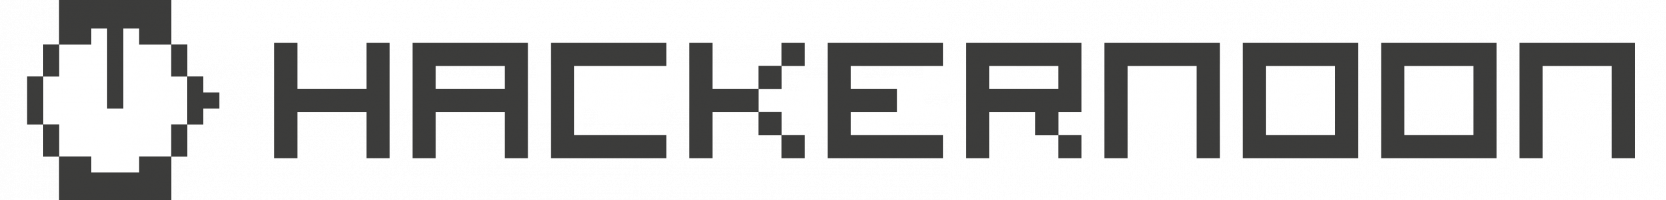 Hackernoon logo